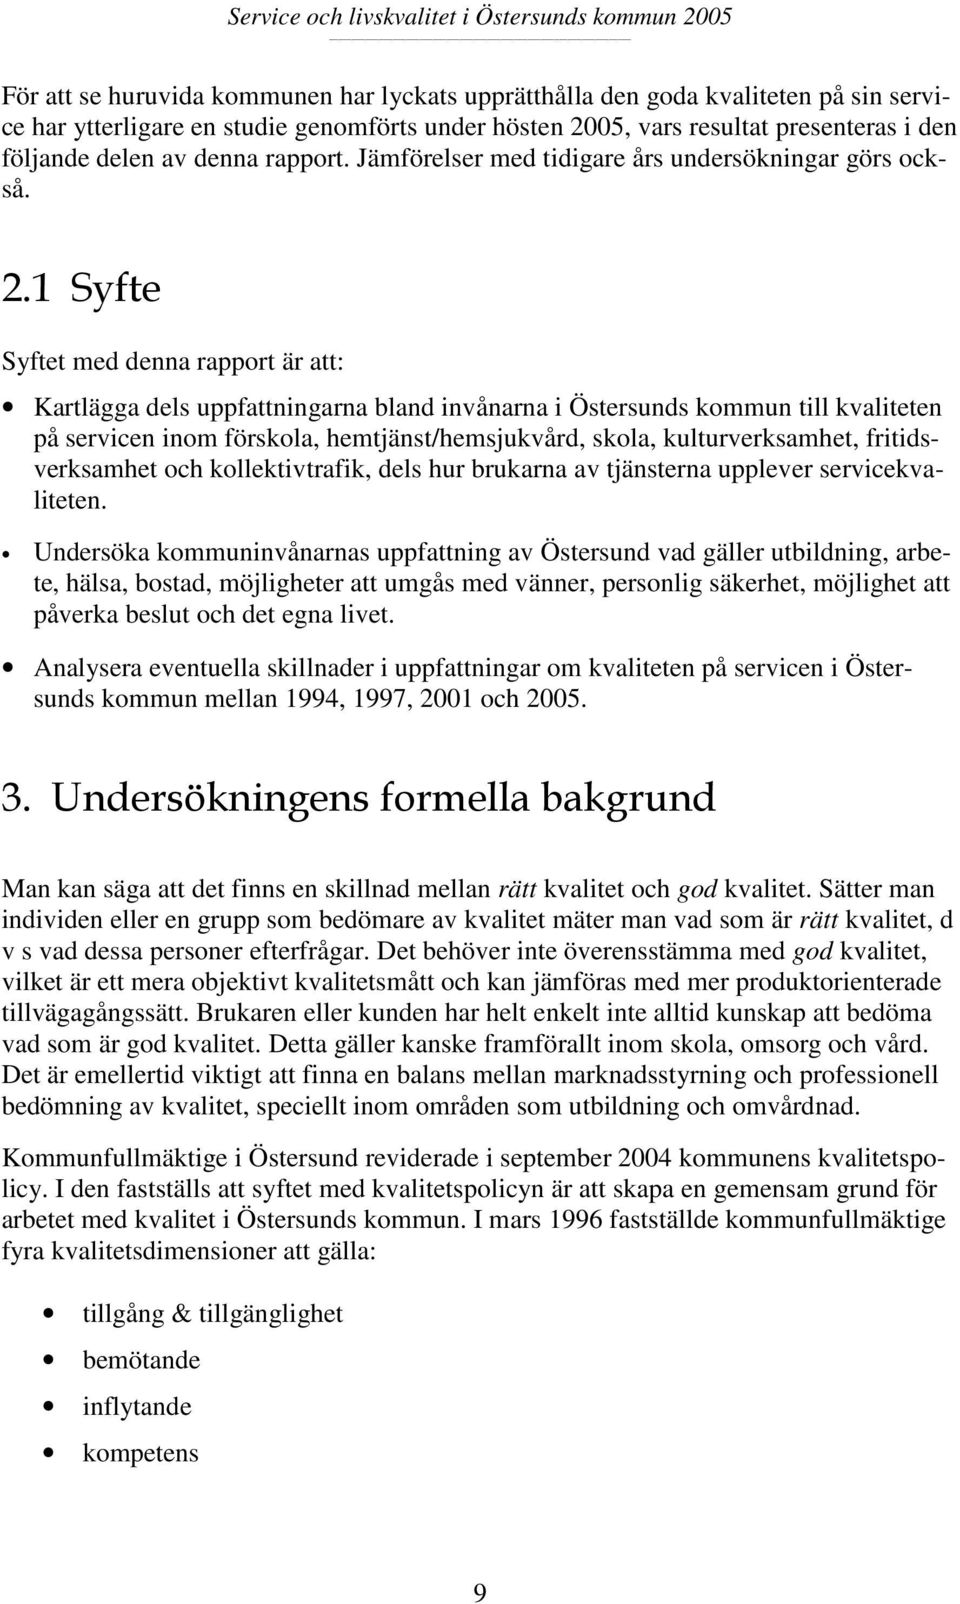 1 Syfte Syftet med denna rapport är att: Kartlägga dels uppfattningarna bland invånarna i Östersunds kommun till kvaliteten på servicen inom förskola, hemtjänst/hemsjukvård, skola, kulturverksamhet,